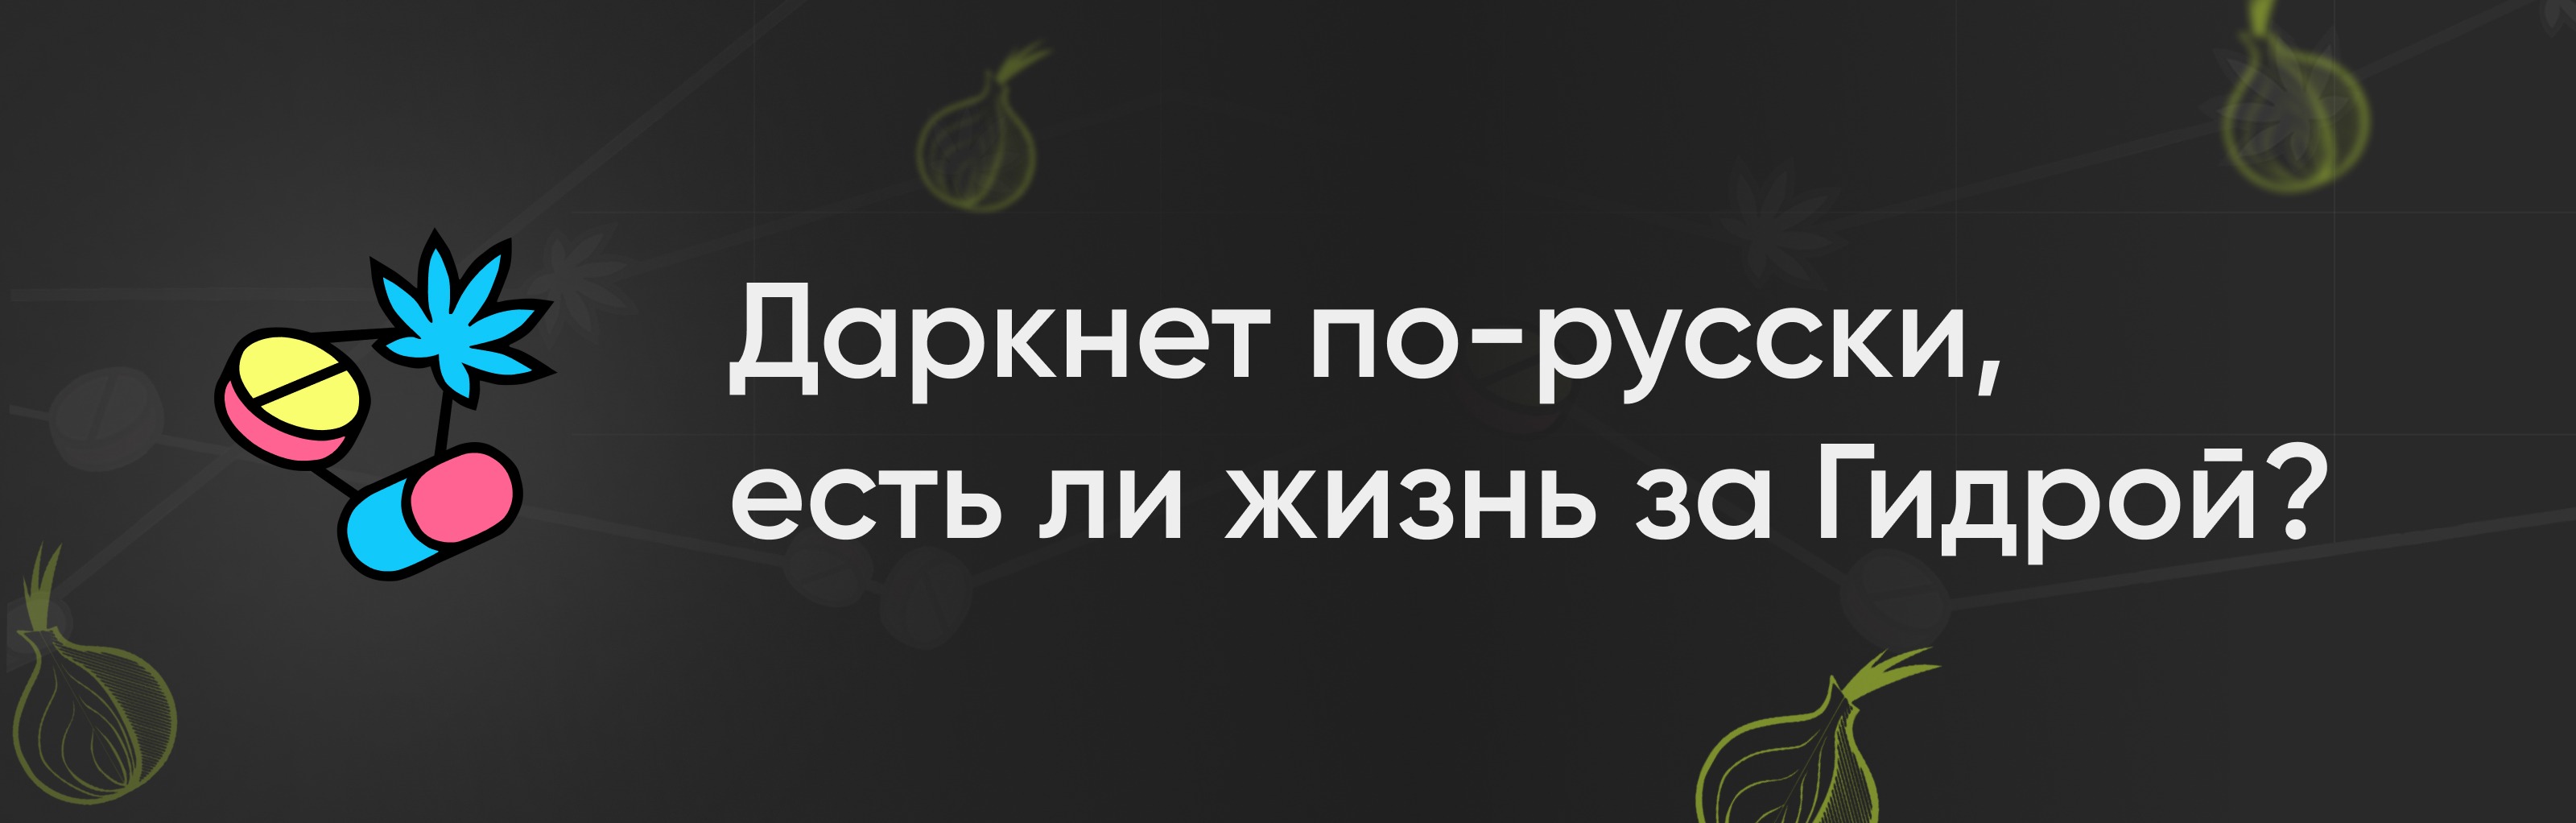 скачать kraken на русском языке официальный сайт даркнет